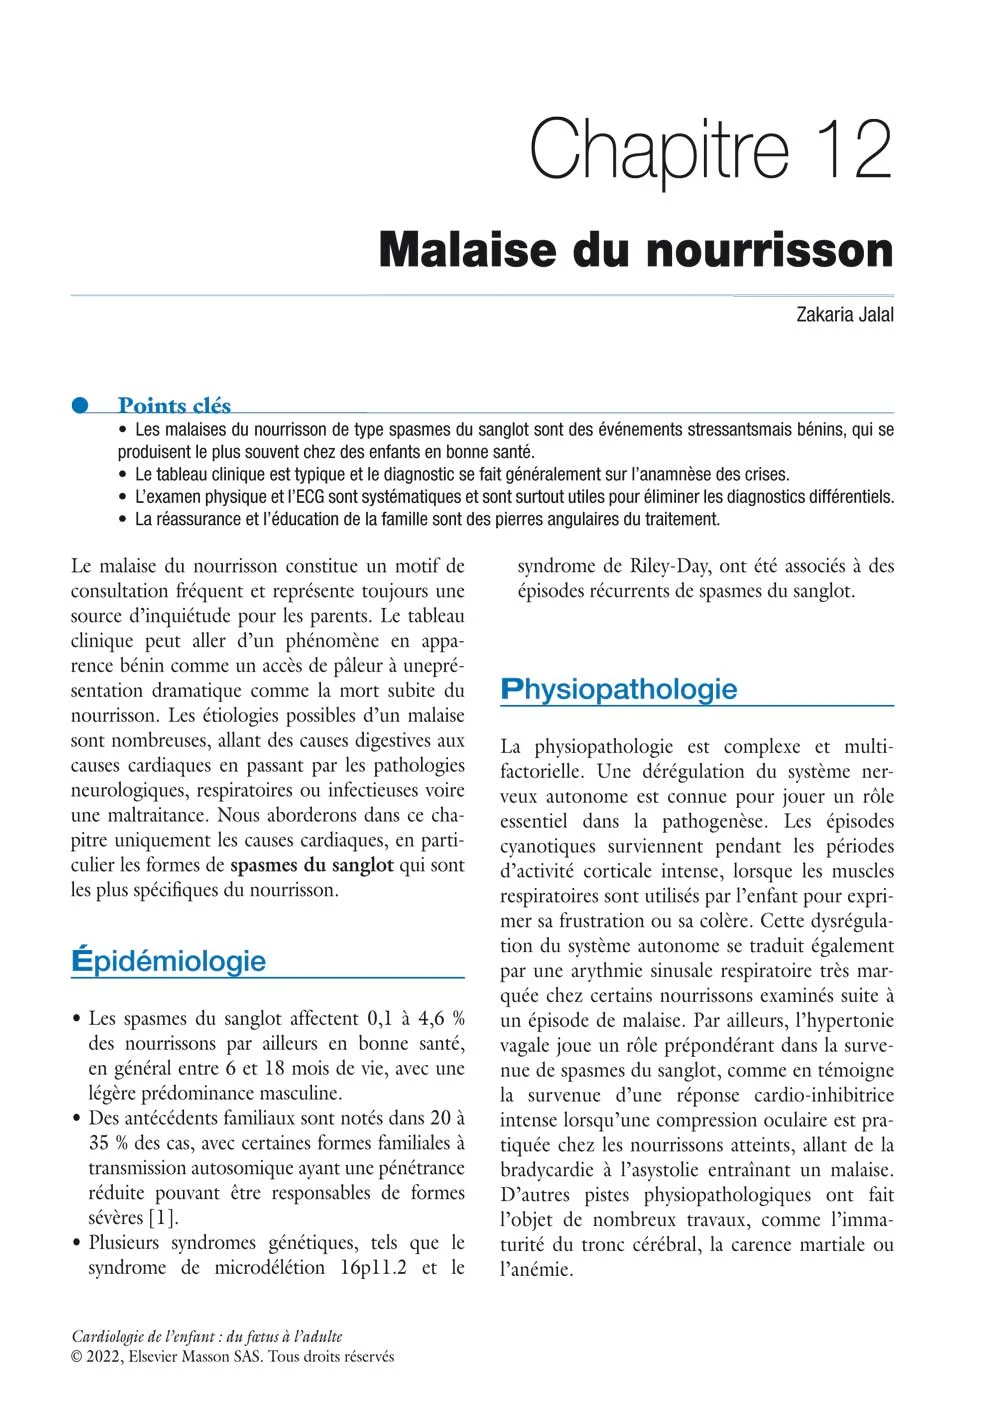 Chapitre 12, Malaise du nourrisson, page 108